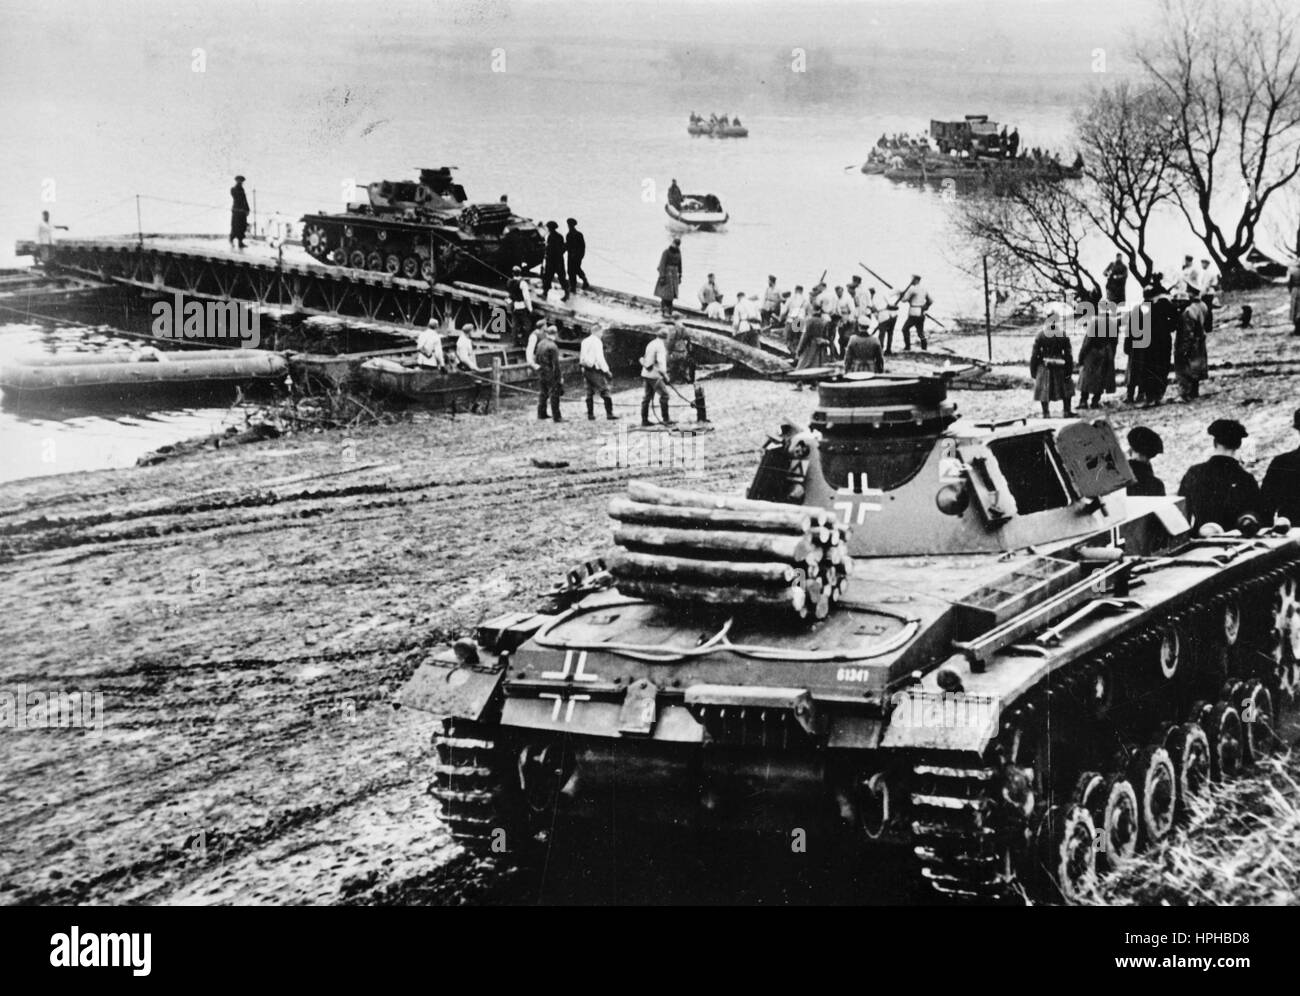 Das Bild der Nazi-Propaganda zeigt deutsche Wehrmachtssoldaten, die einen Panzer über einen Fluss transportieren. Veröffentlicht im April 1940. Fotoarchiv für Zeitgeschichte - NICHT FÜR DEN KABELDIENST - | weltweite Verwendung Stockfoto